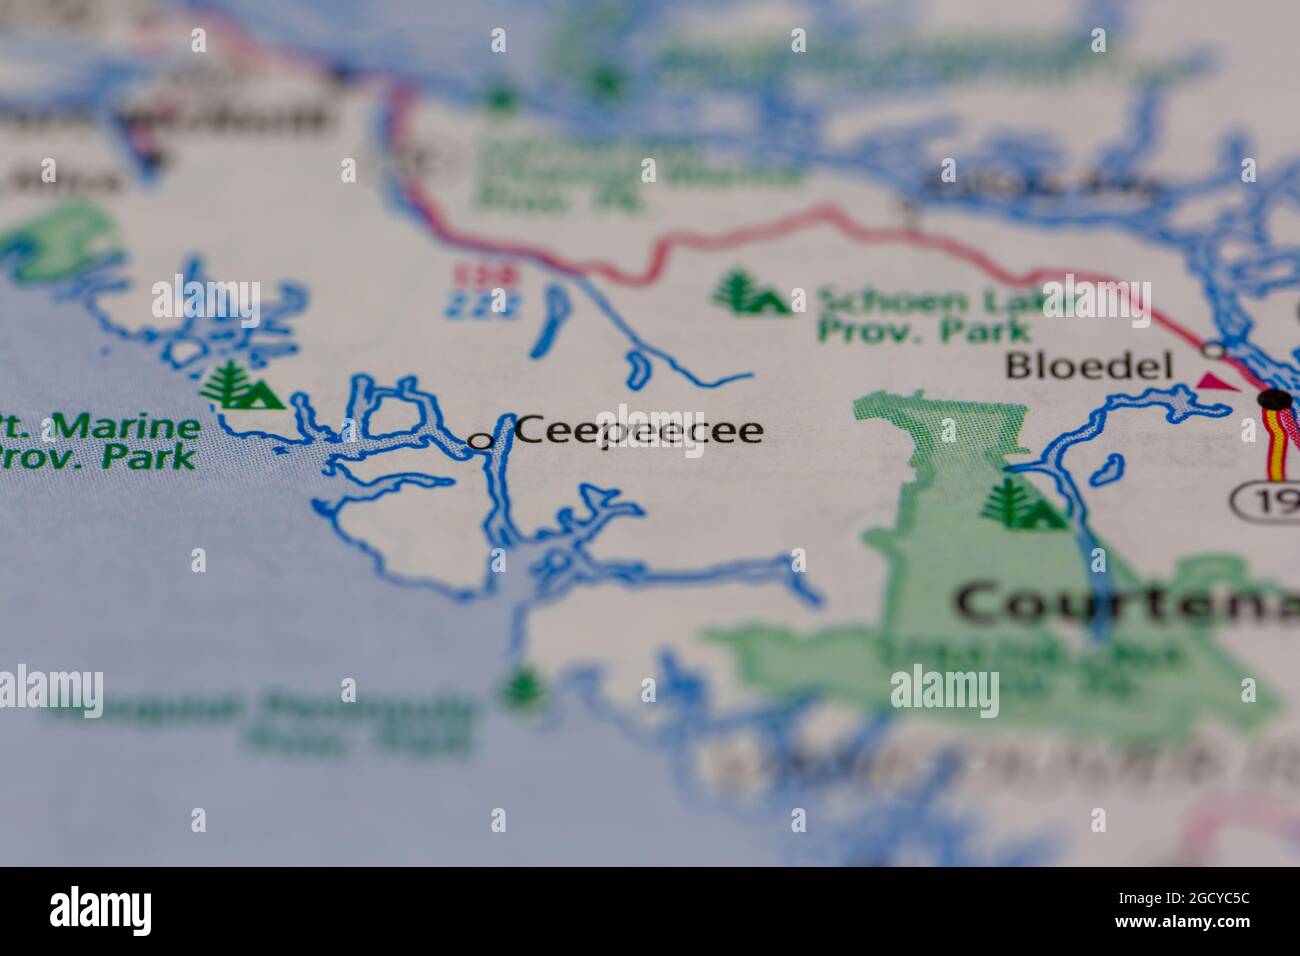 Ceepeecee Vancouver Island Canada visualizzato su una mappa stradale o su una mappa geografica Foto Stock